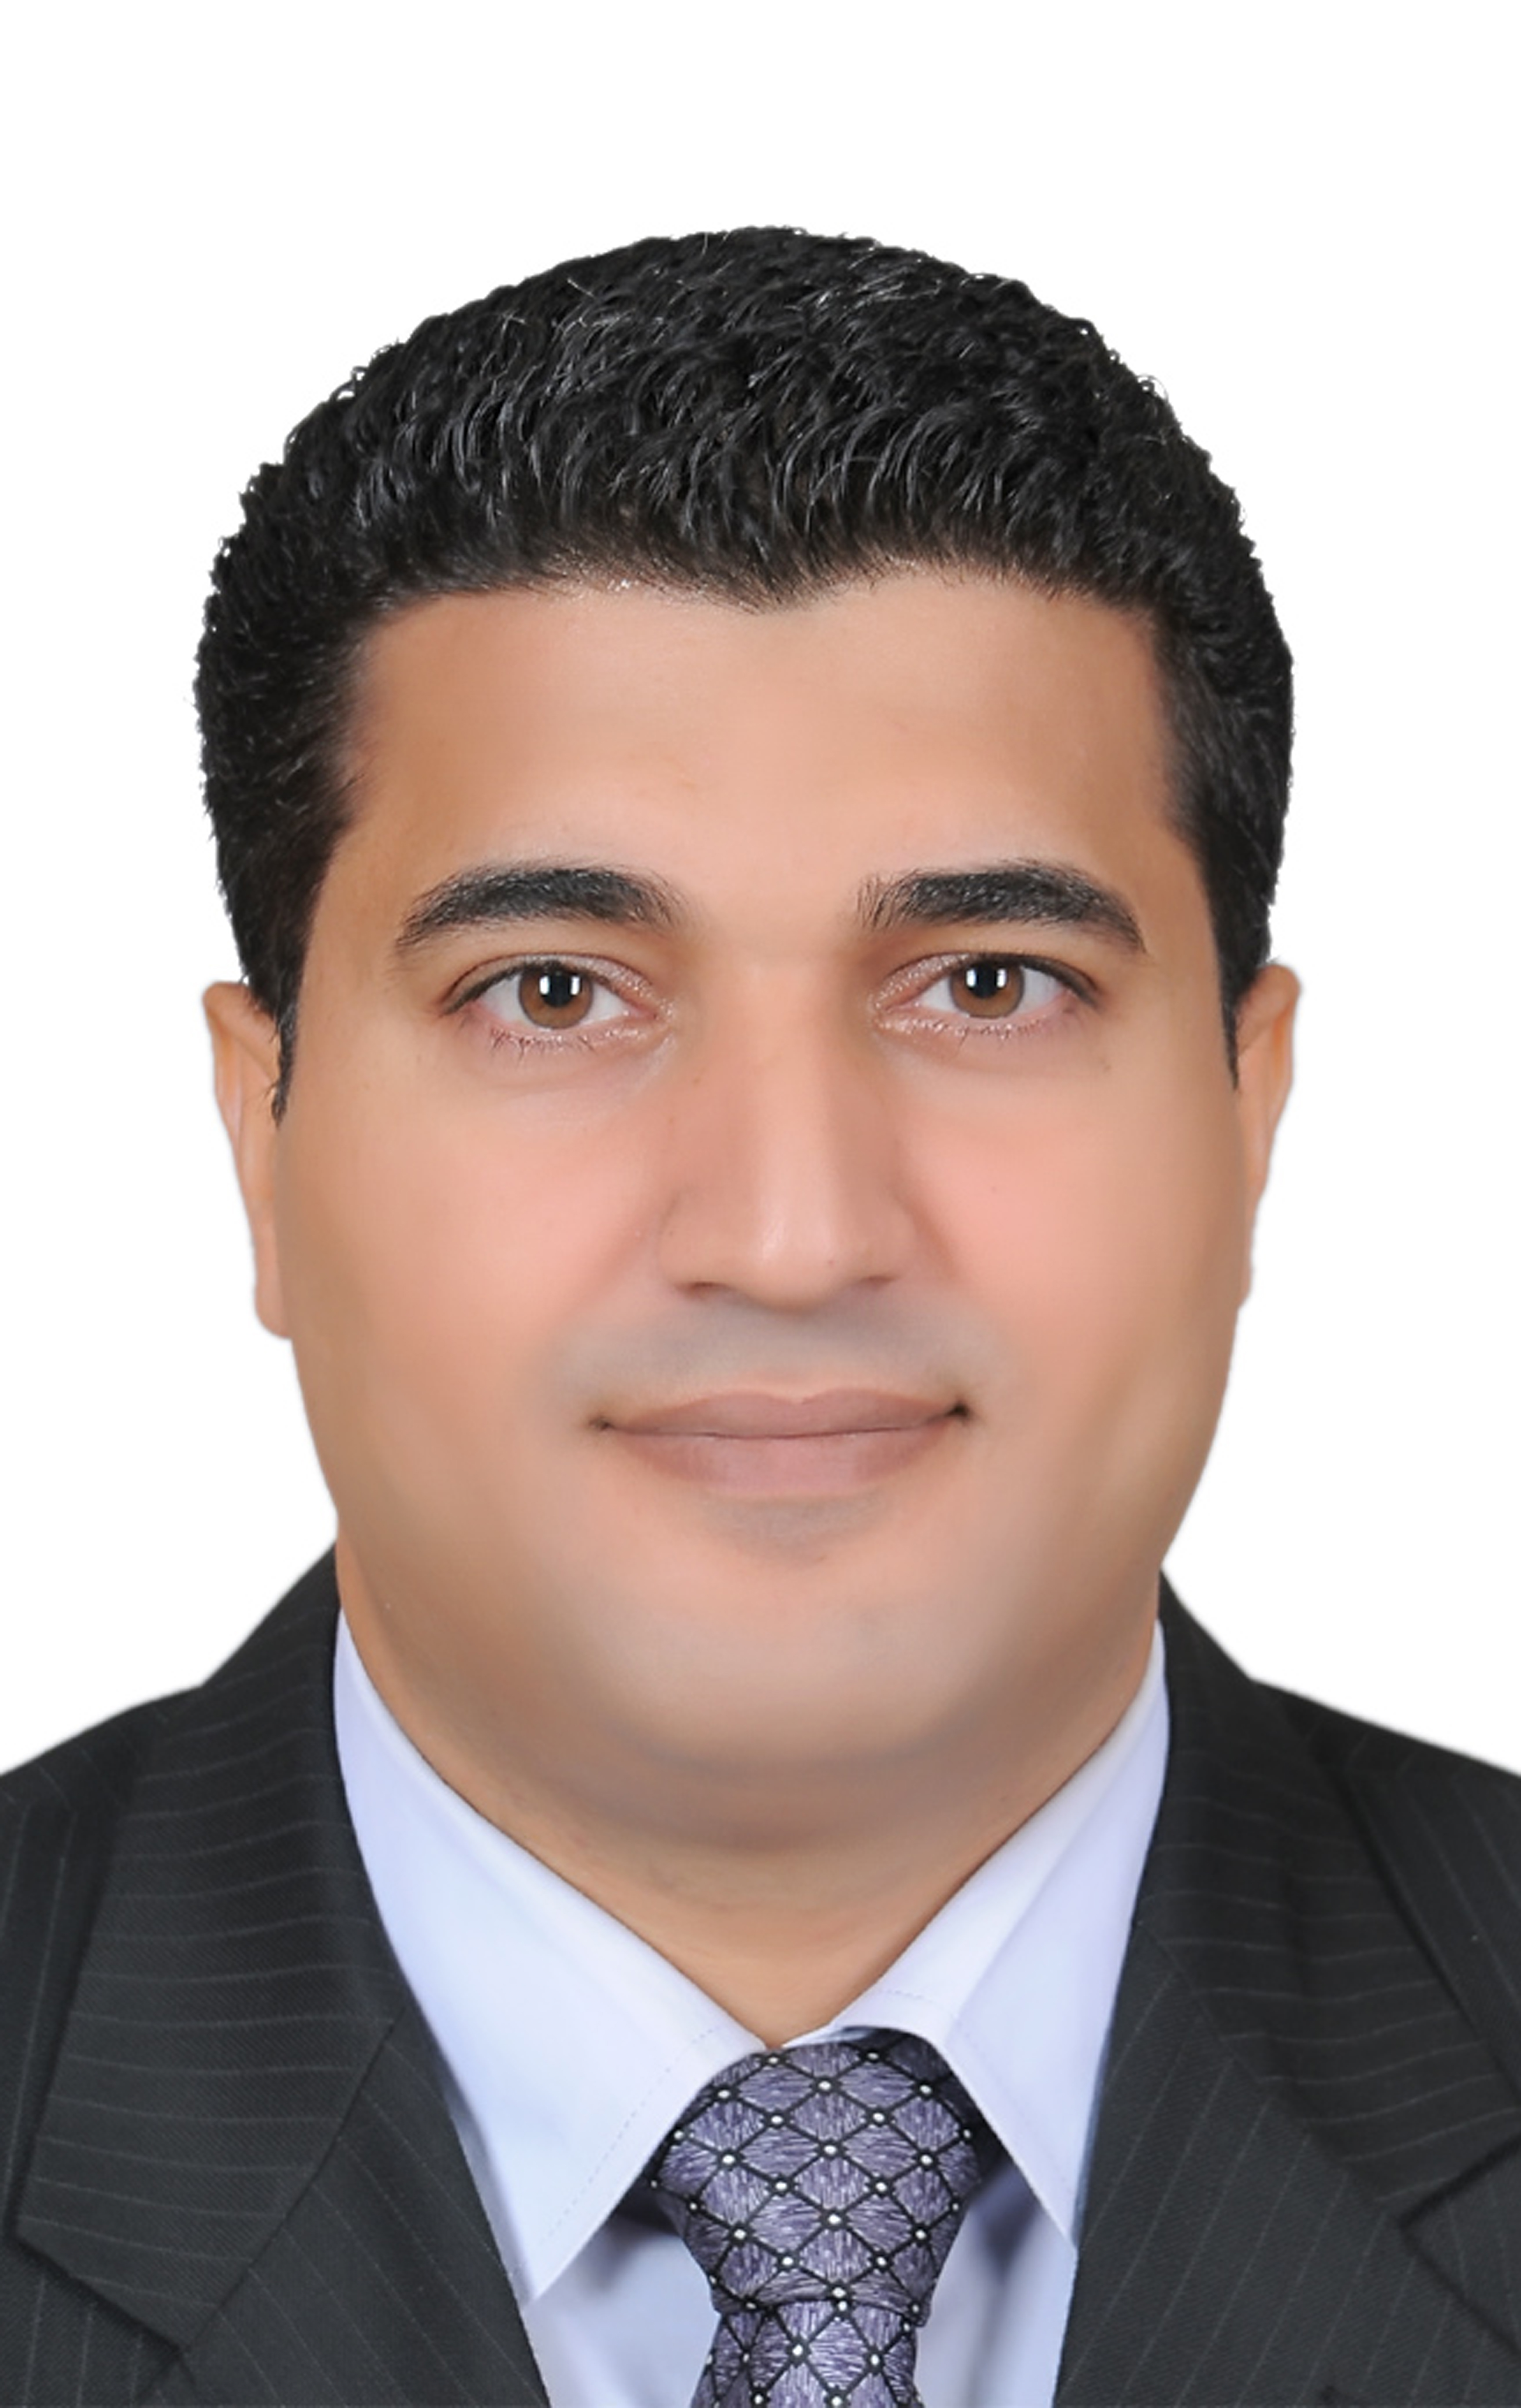 Nagah Mohamed Abd El-kawi Abou-rashed